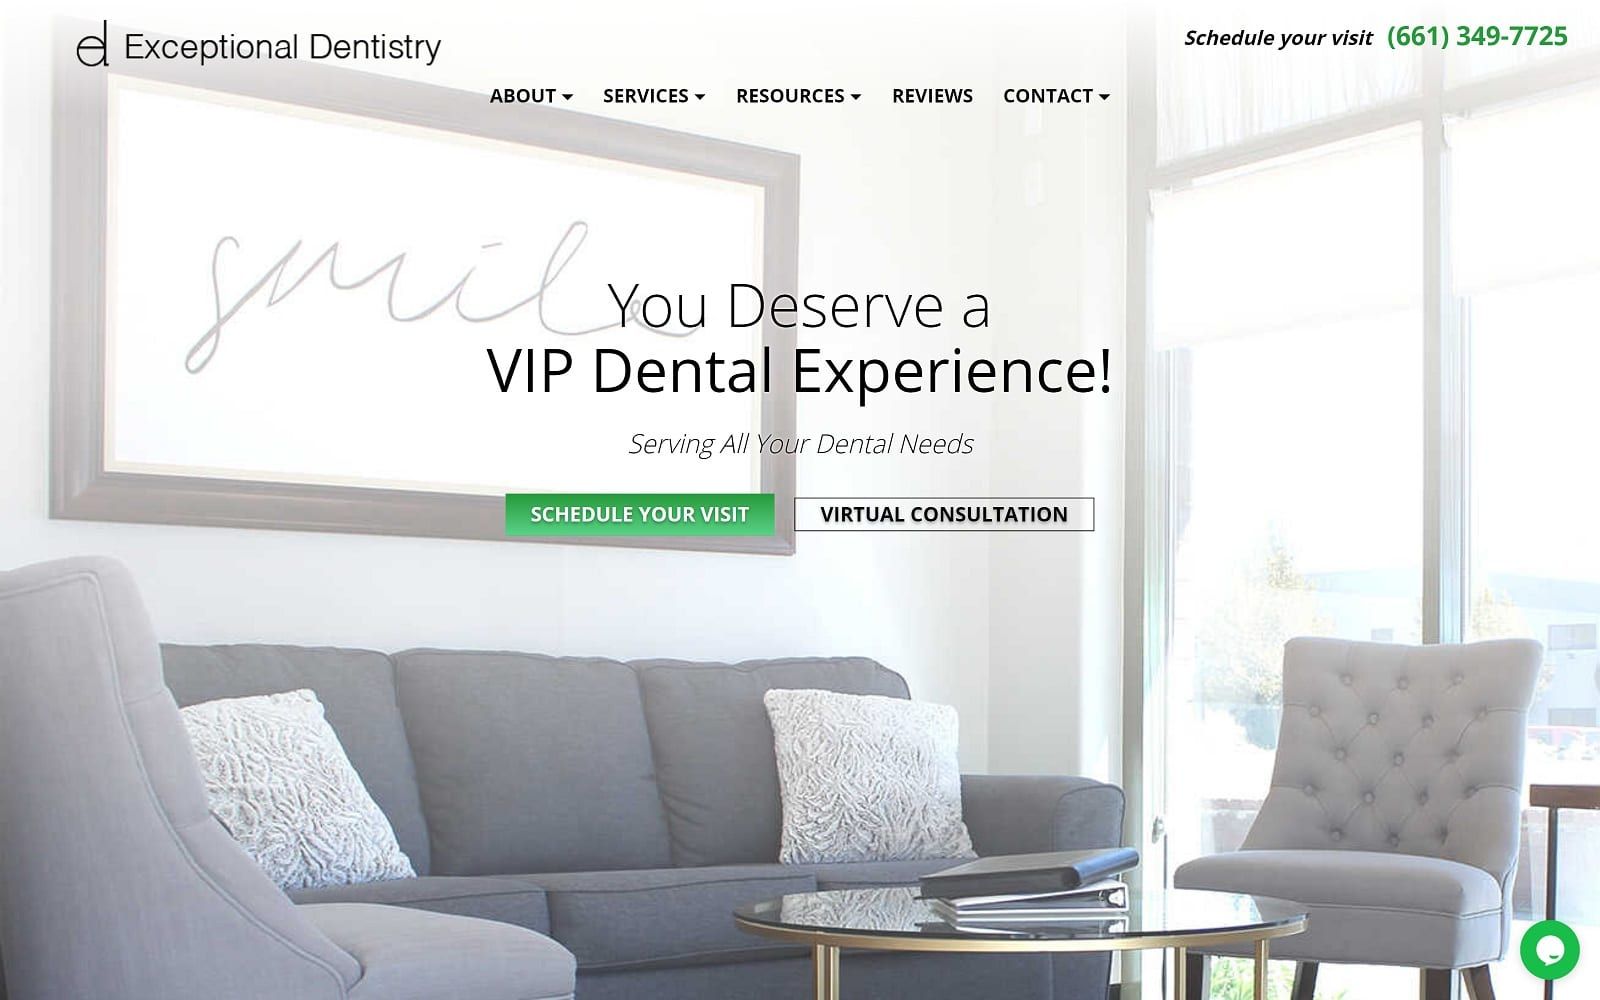 The screenshot of exceptional dentistry exceptionaldentistryca. Com website